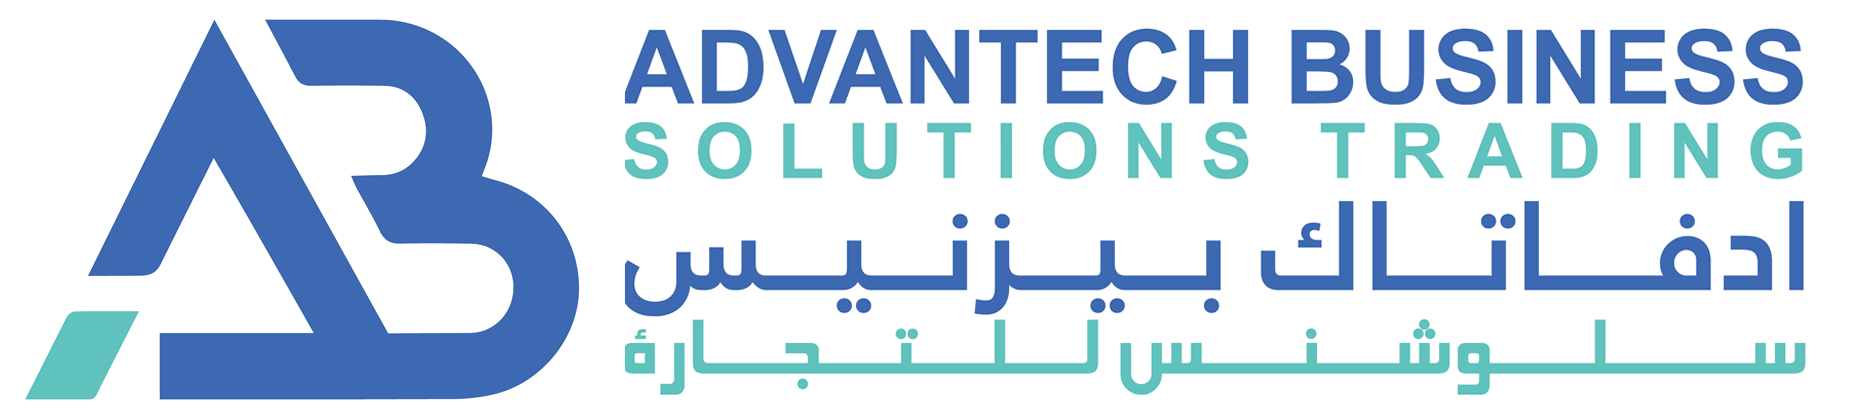 Advantech Business Solutions